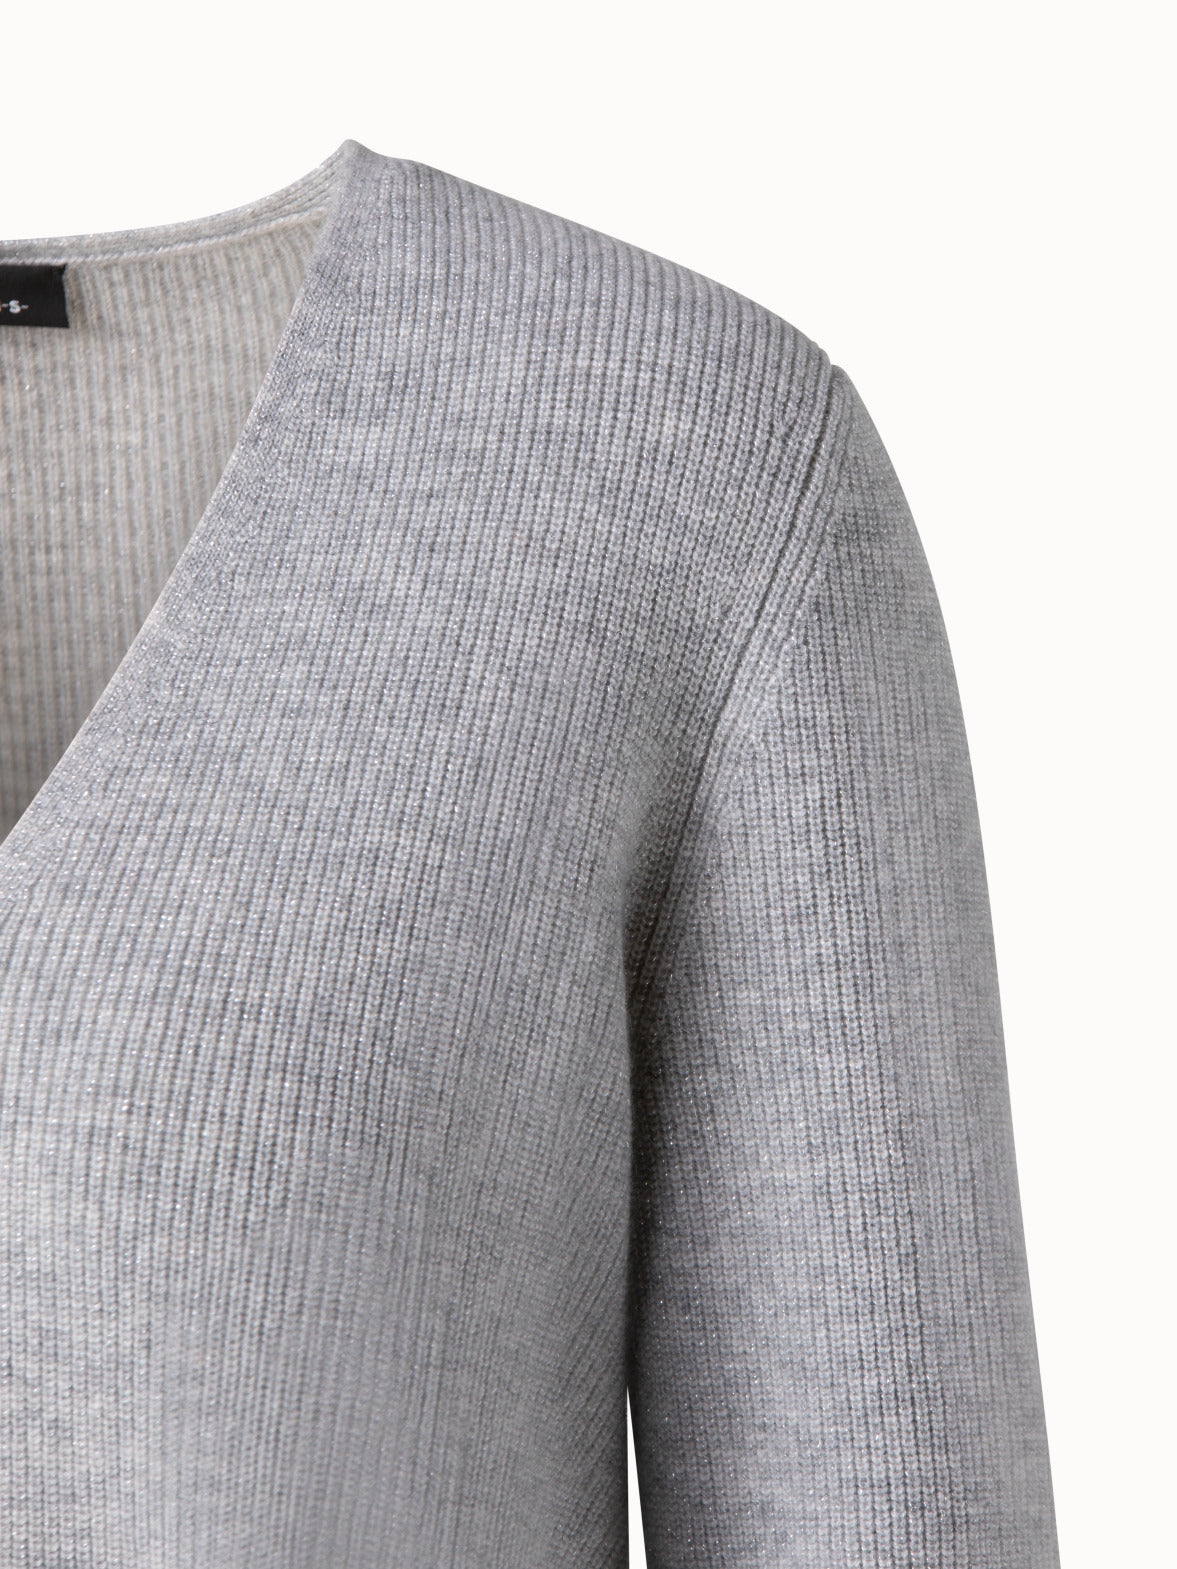 V-neck Sweater - Light gray melange - Ladies